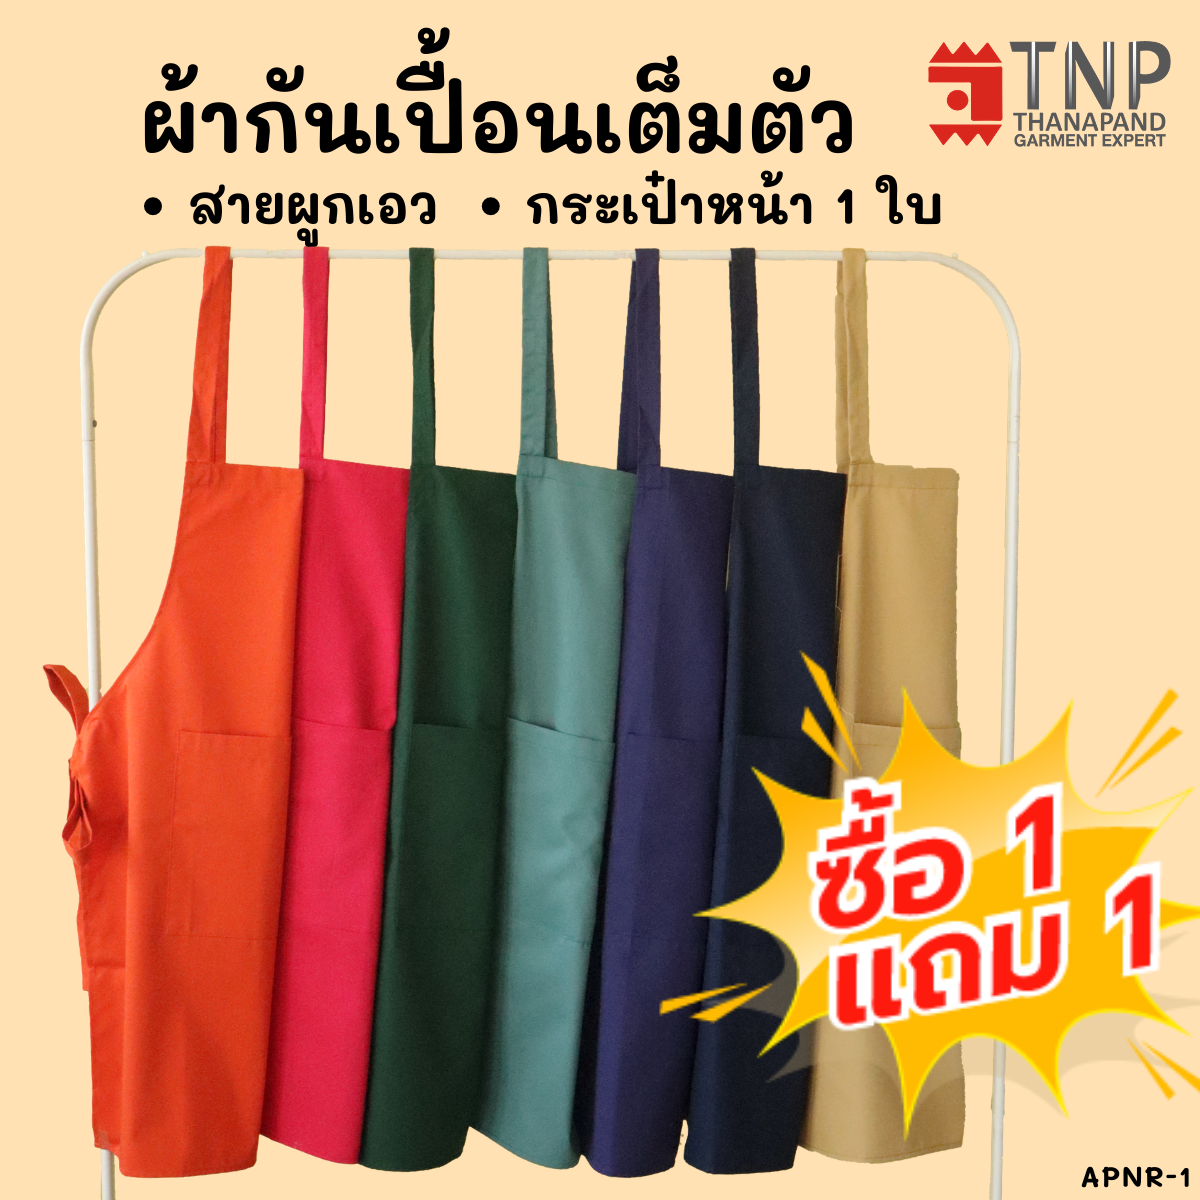 ?ซื้อ1เเถม1 ผ้ากันเปื้อน ผ้ากันเปื้อนเต็มตัวกระเป๋าหน้า  รหัส: APNR1-1 (TNP-Thanapand ฐานะภัณฑ์)